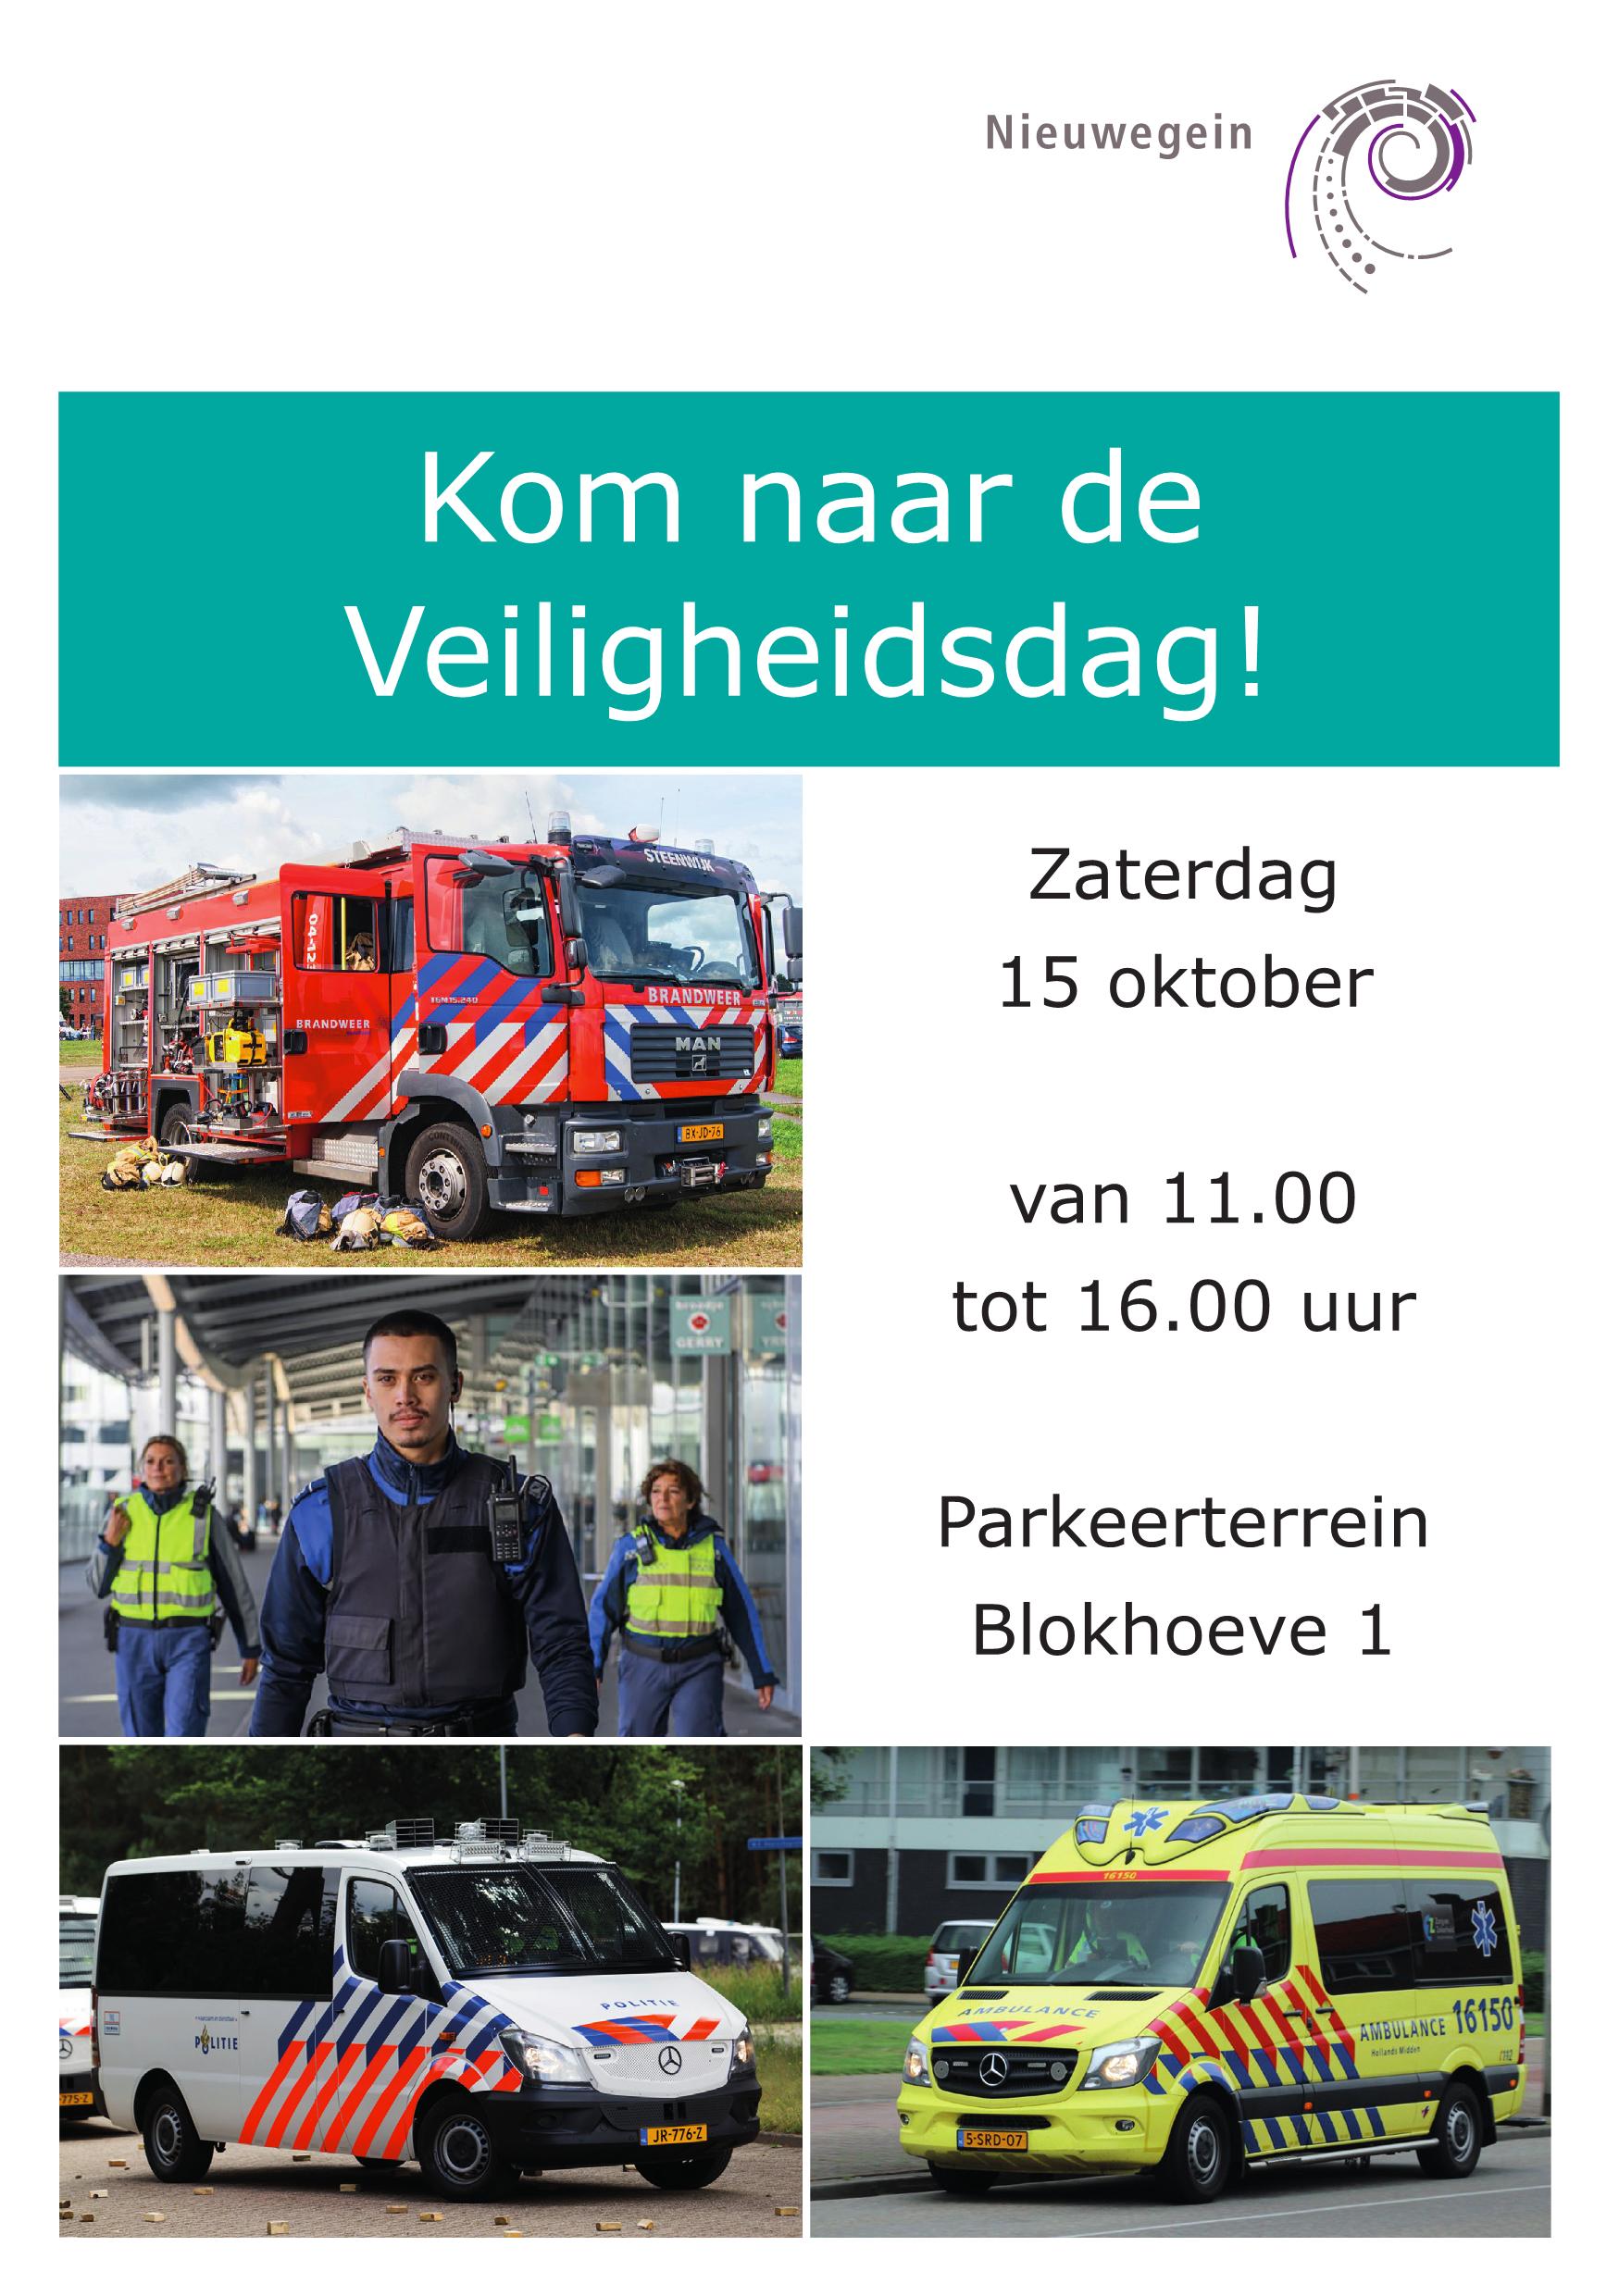 https://www.nieuwegeinsewijken.nl/batau-zuid/upload/afbeeldingen/flyer-veiligheidsdag1.jpg